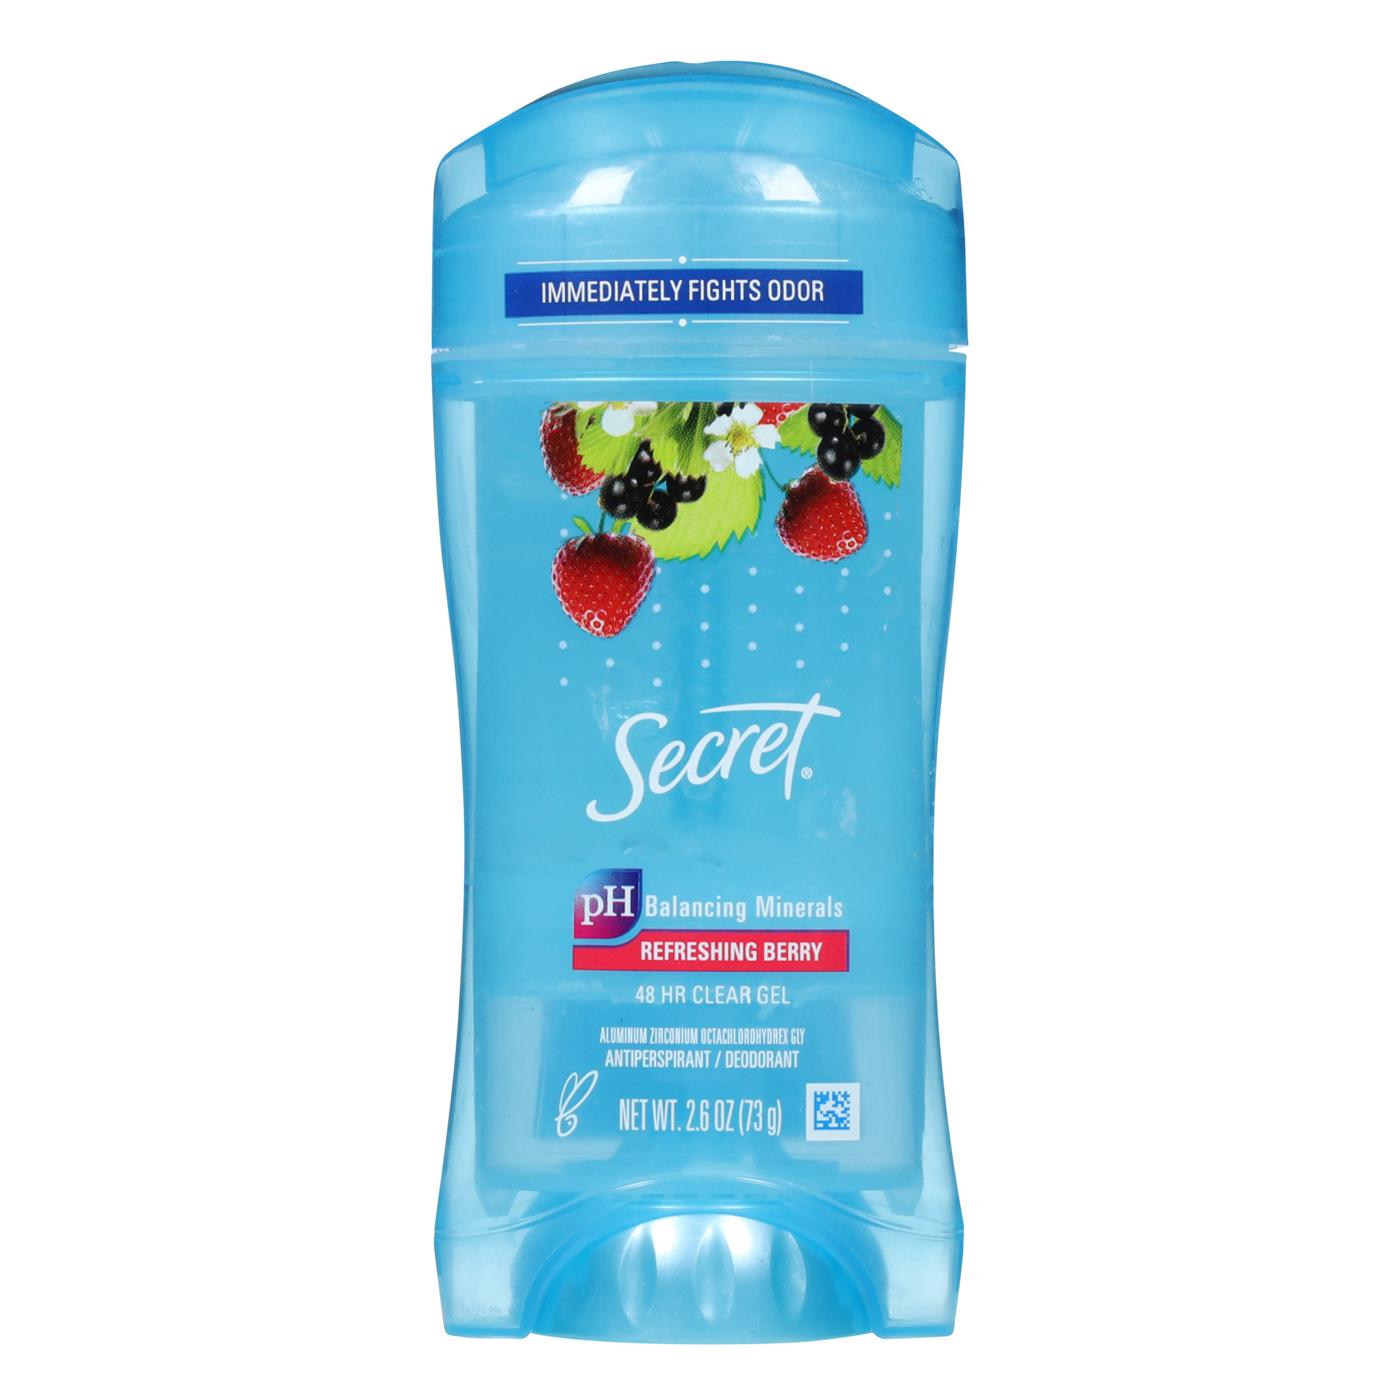 Secret Clear Gel Antiperspirant Deodorant - Refreshing Berry; image 1 of 5